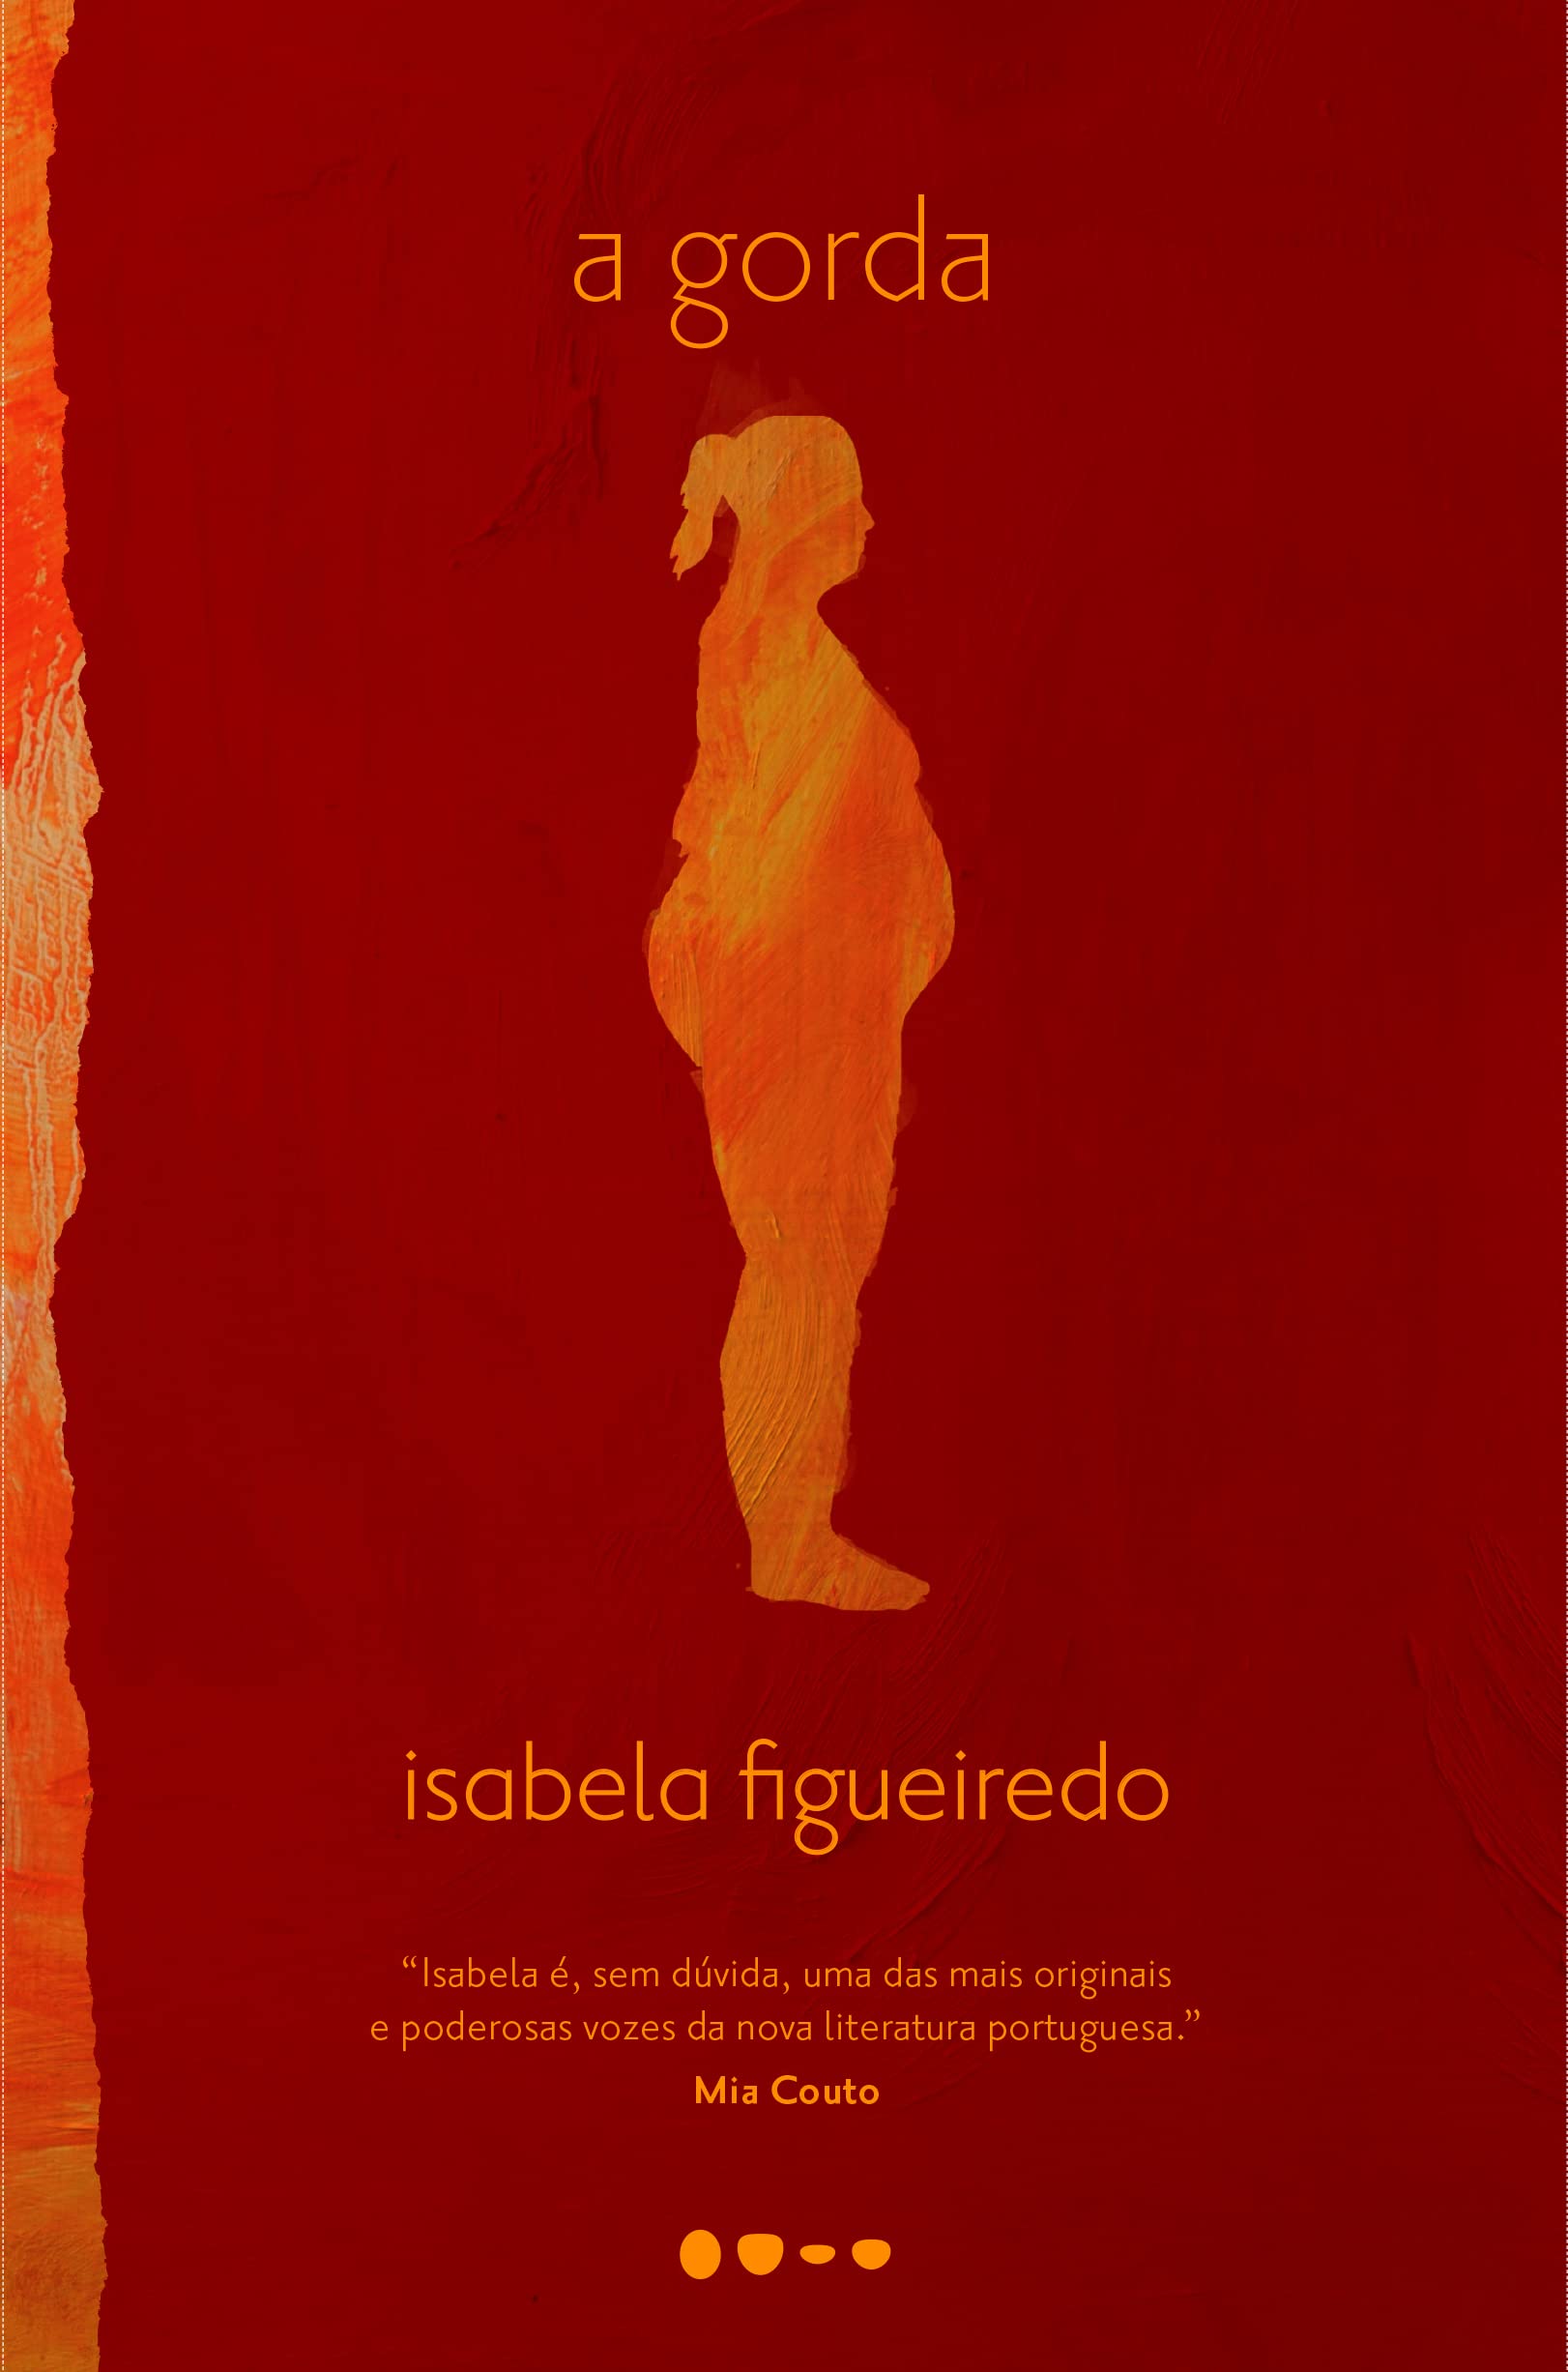 Capa do livro 'A gorda' de Isabela Figueiredo